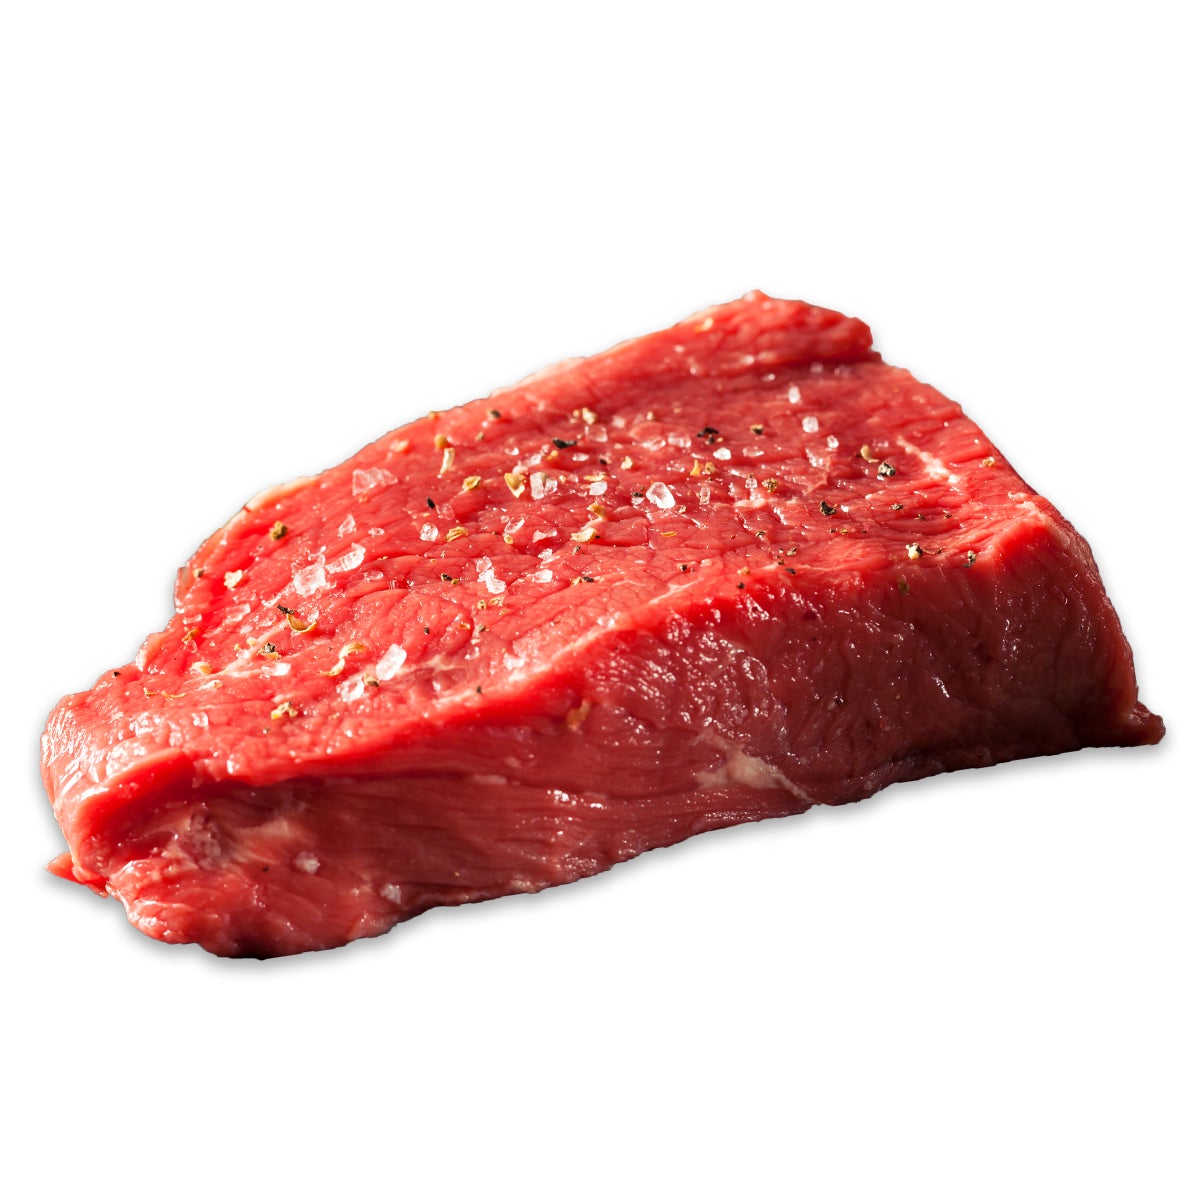 Steak 250g Rinder,Hüfte